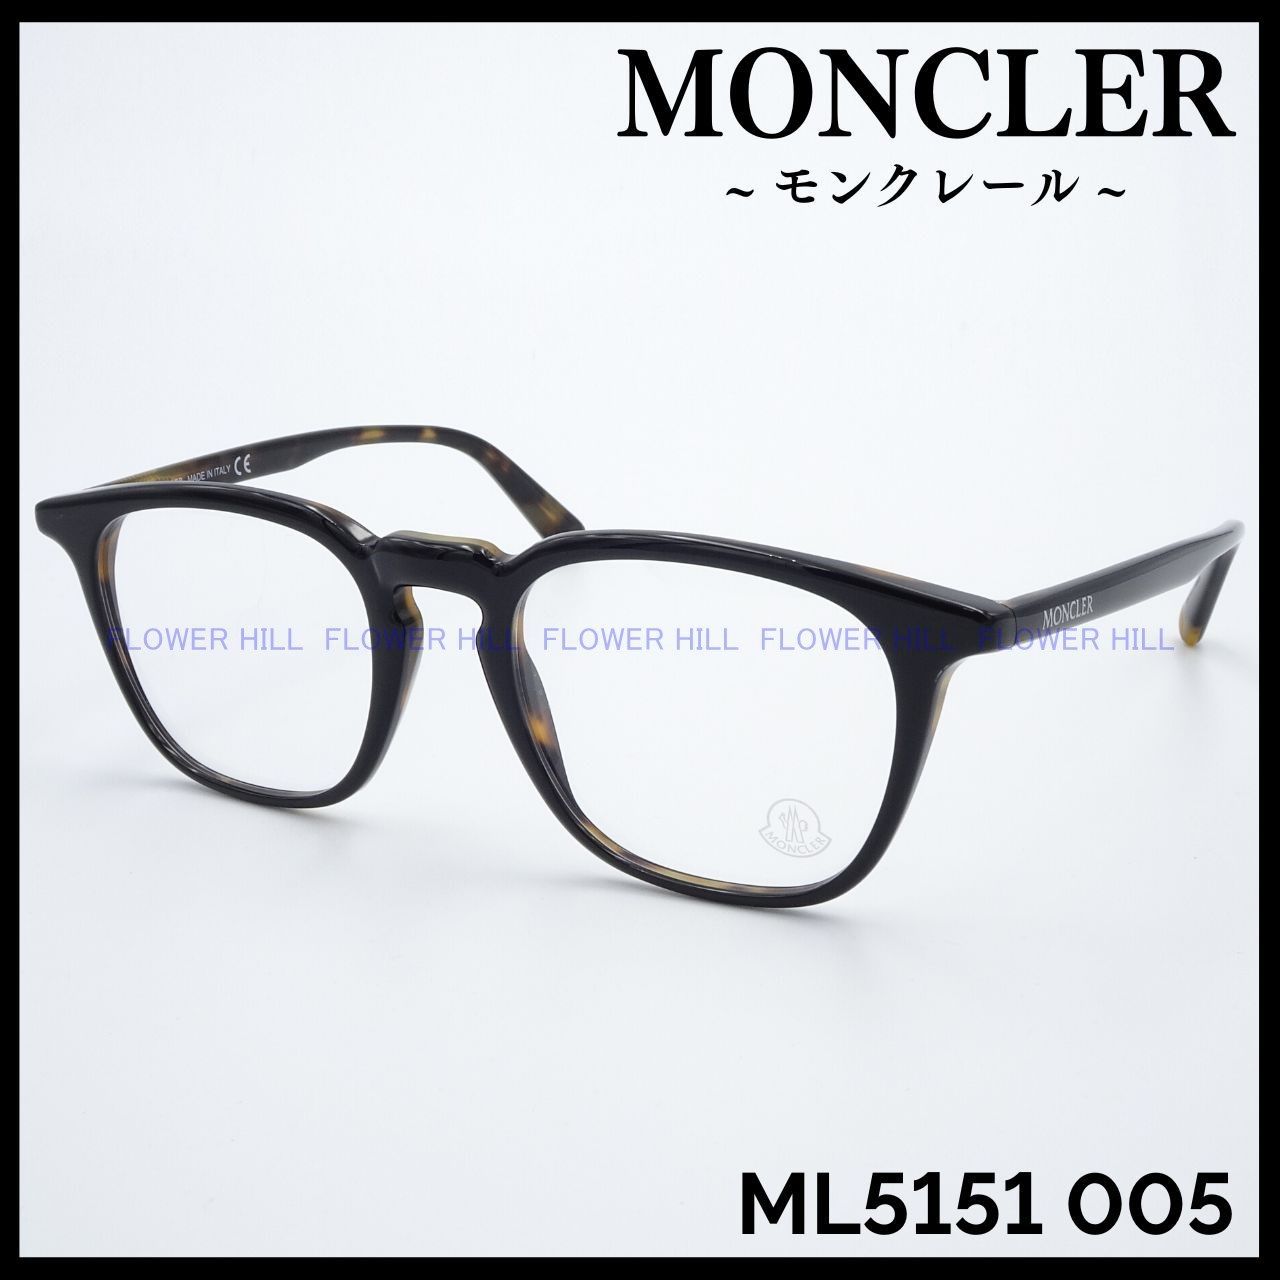 MONCLER モンクレール メガネ ML5151 005 ブラック・ハバナ 